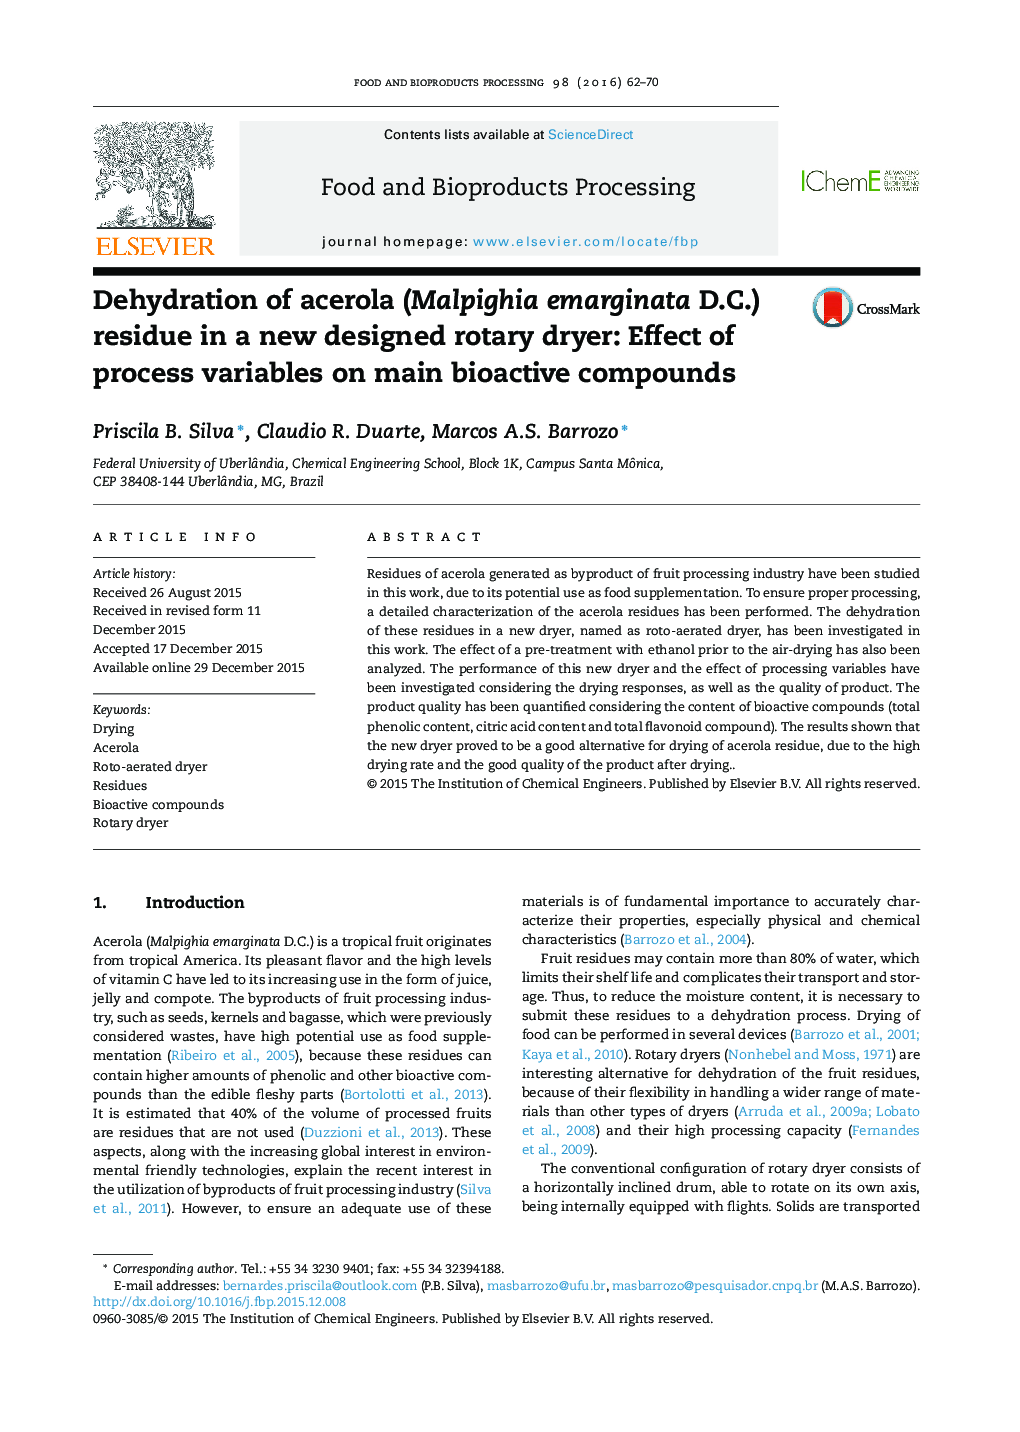 Dehydration باقی مانده از Acerola (Malpighia emarginata D.C.) در خشک کن دوار جدیدا طراحی شده: اثر متغیرهای فرآیند بر ترکیبات اصلی زیست فعال